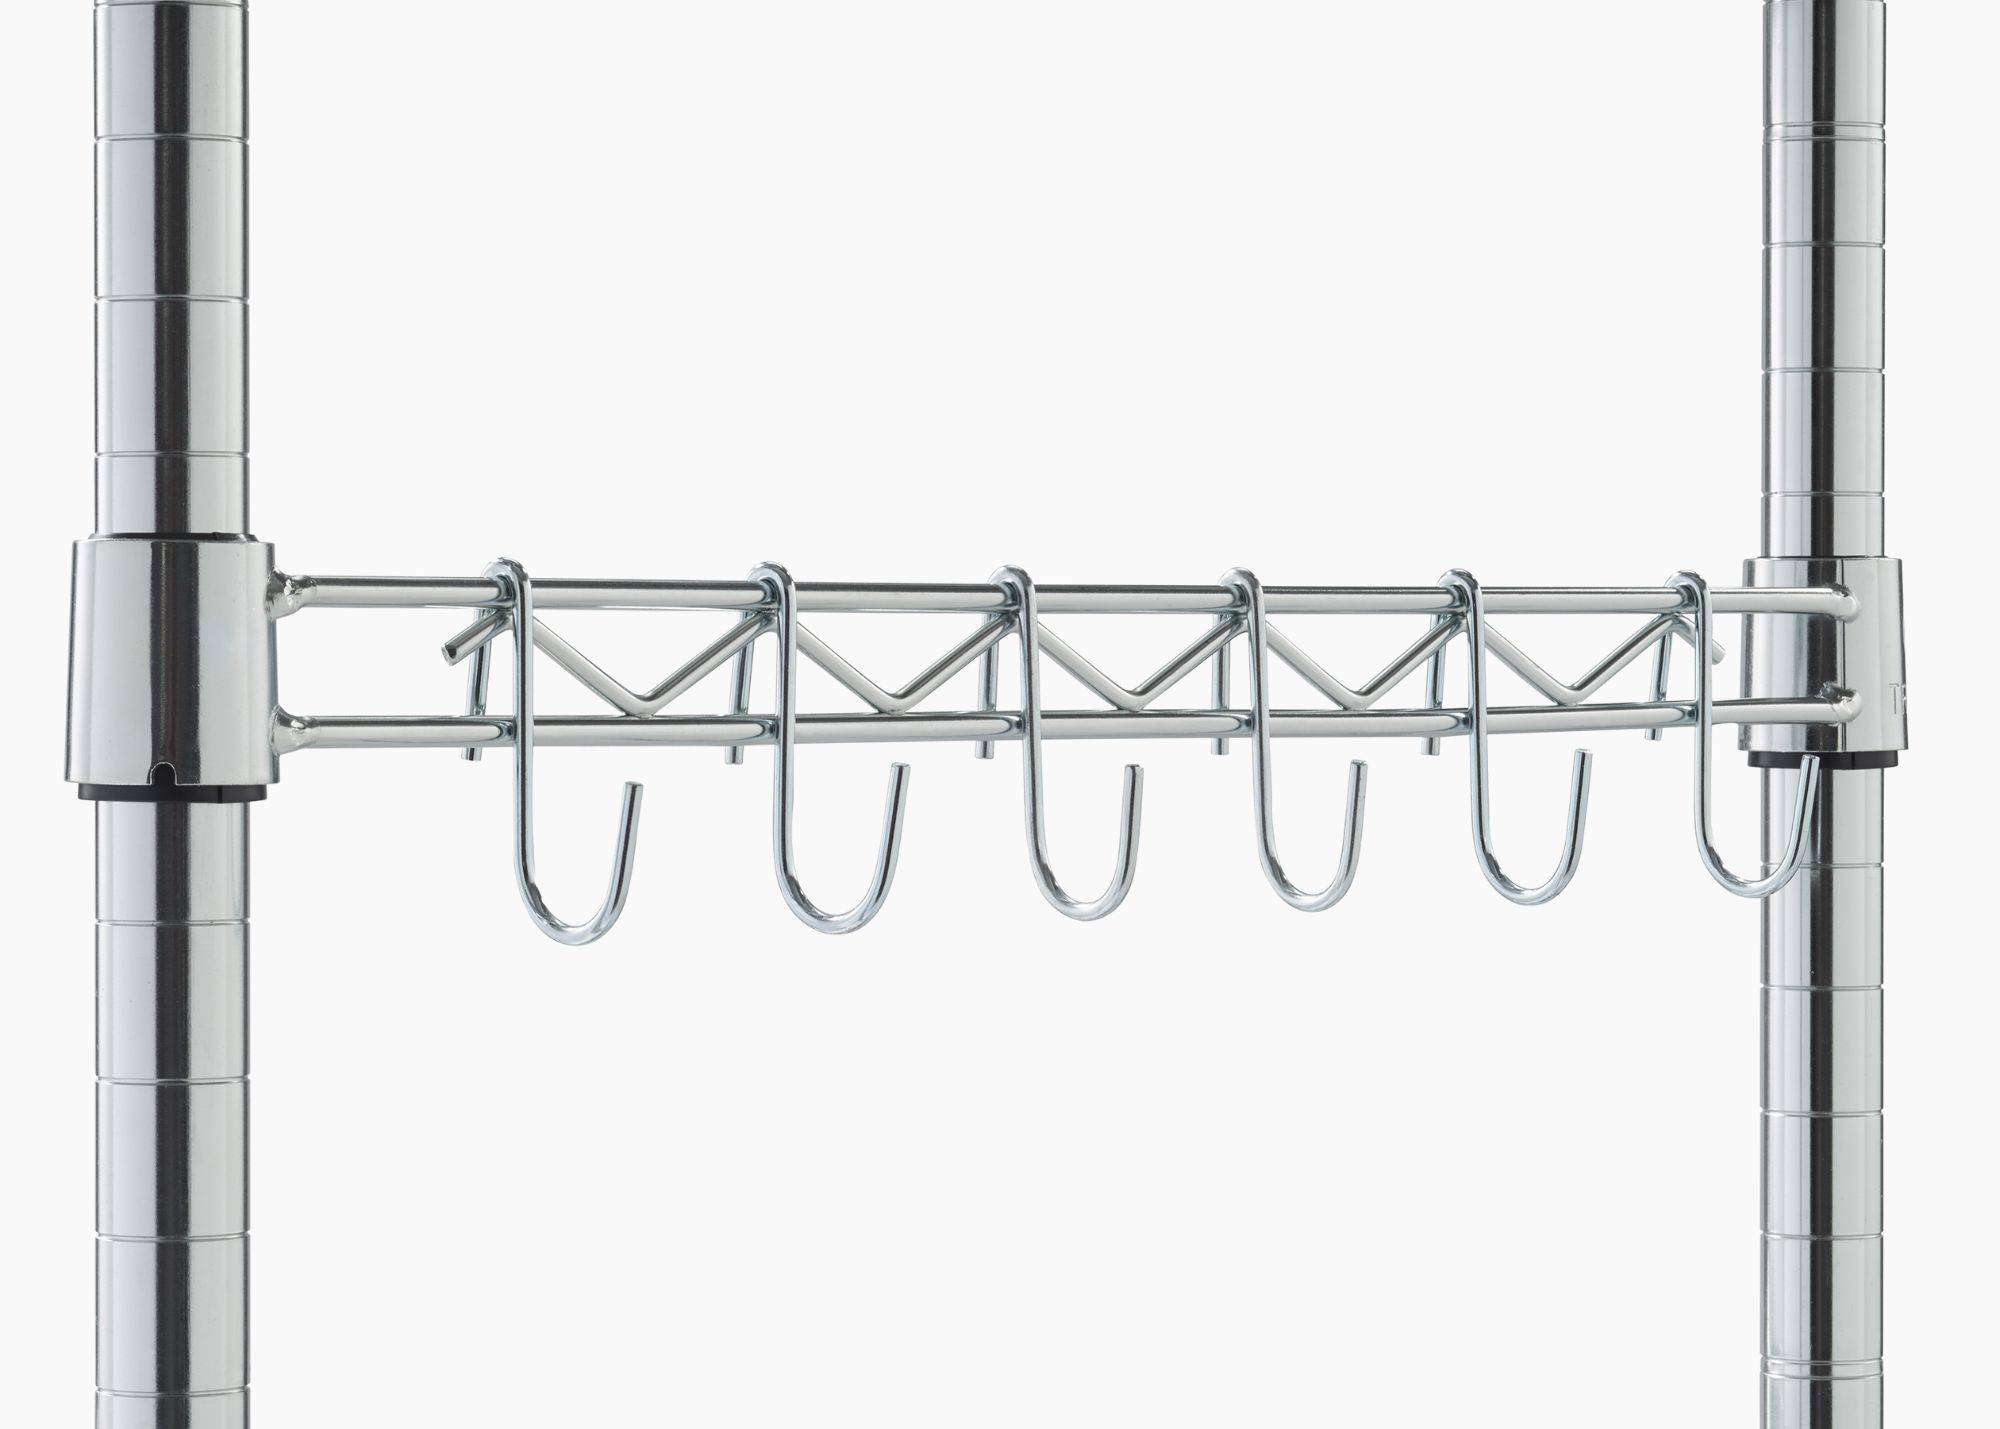 sidebar with 6 S-shape hooks